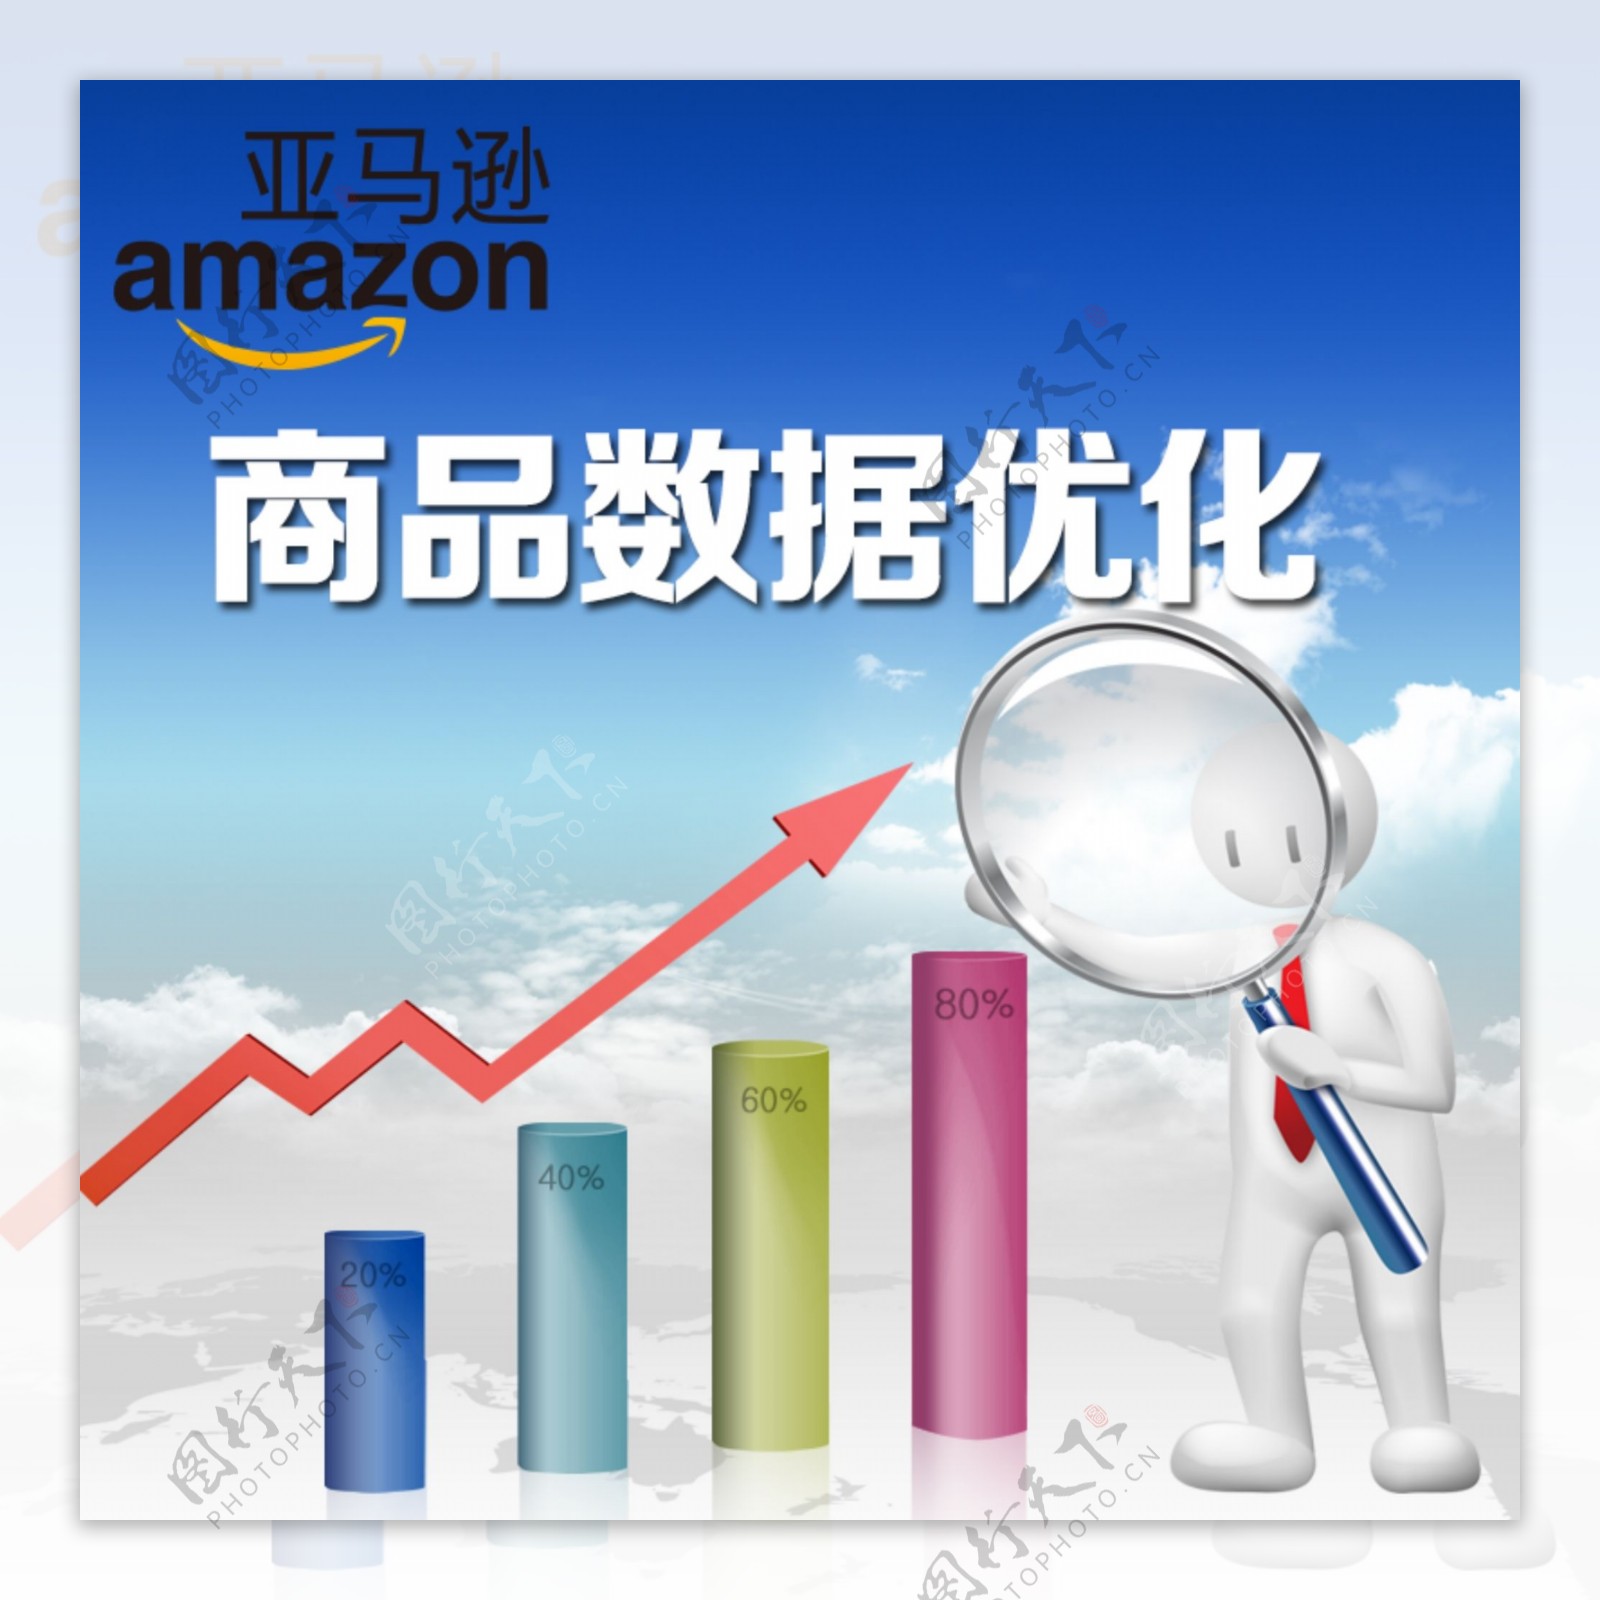 亚马逊商品数据优化广告图